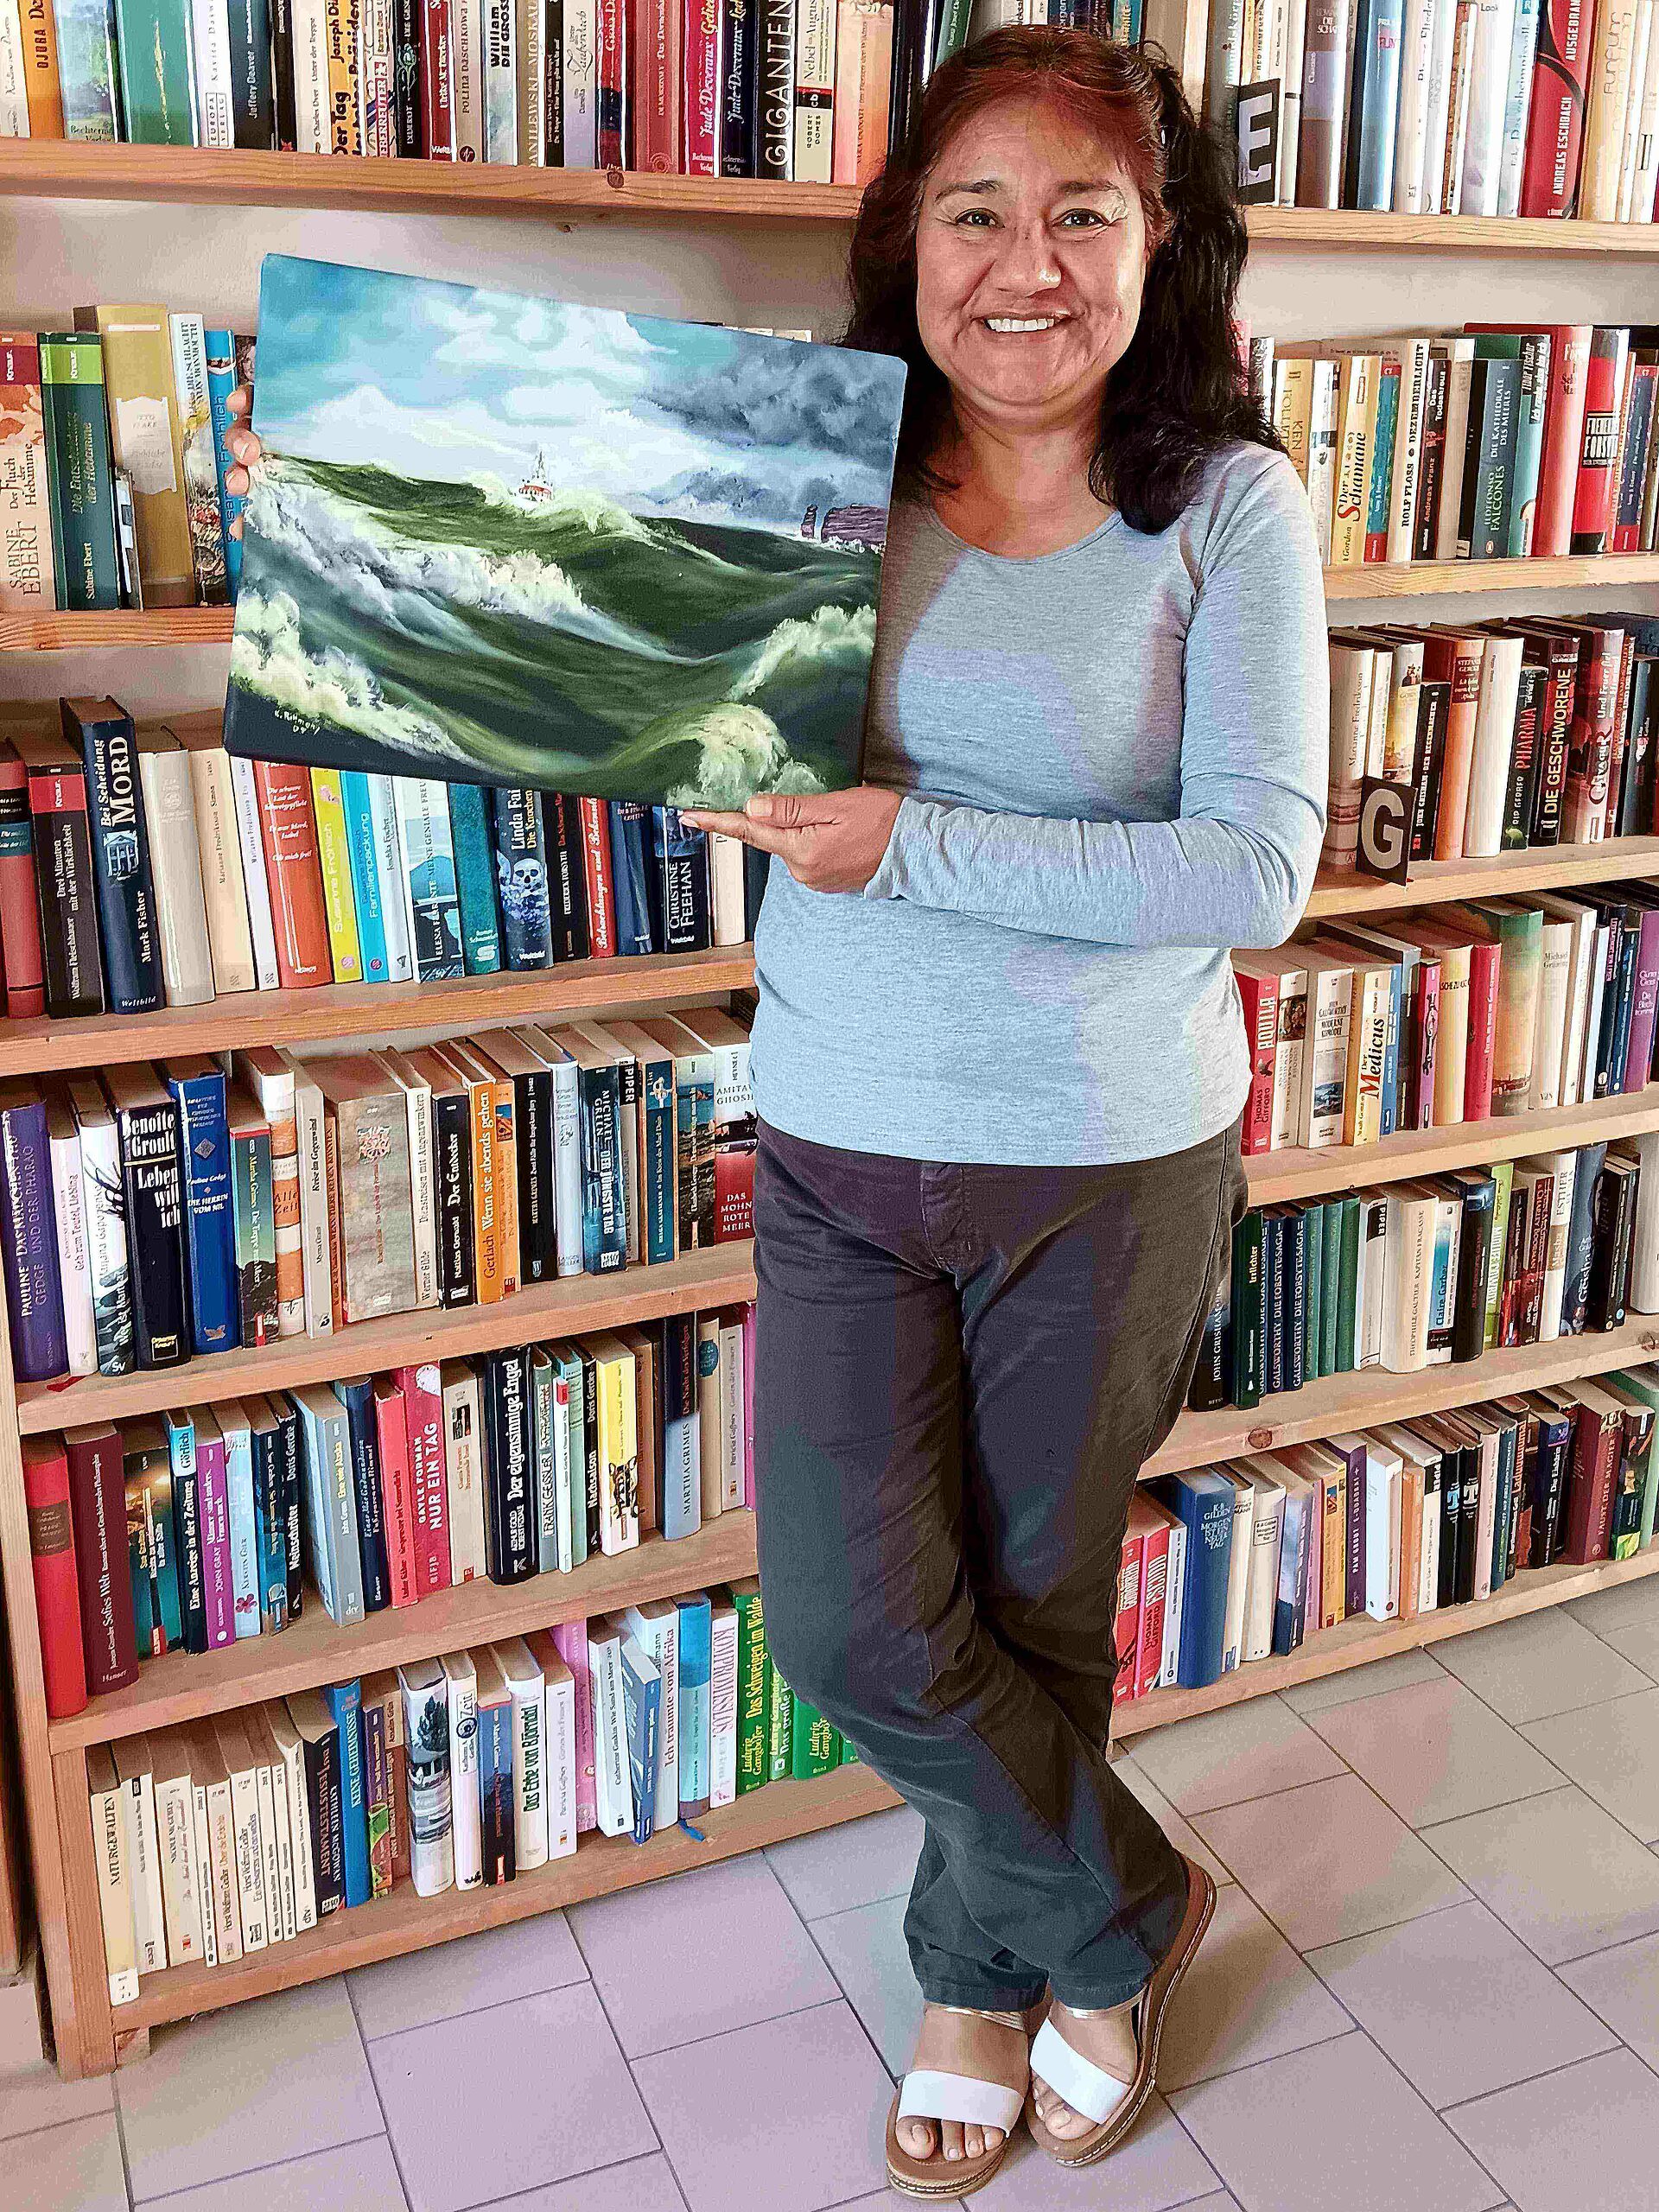 Eine Frau steht mit einem selbstgemalten Gemälde, Öl auf Leinwand, in der Hand vor einer Bücherwand. Das Bild zeigt einen Seenotrettungskreuzer bei schwerer See.